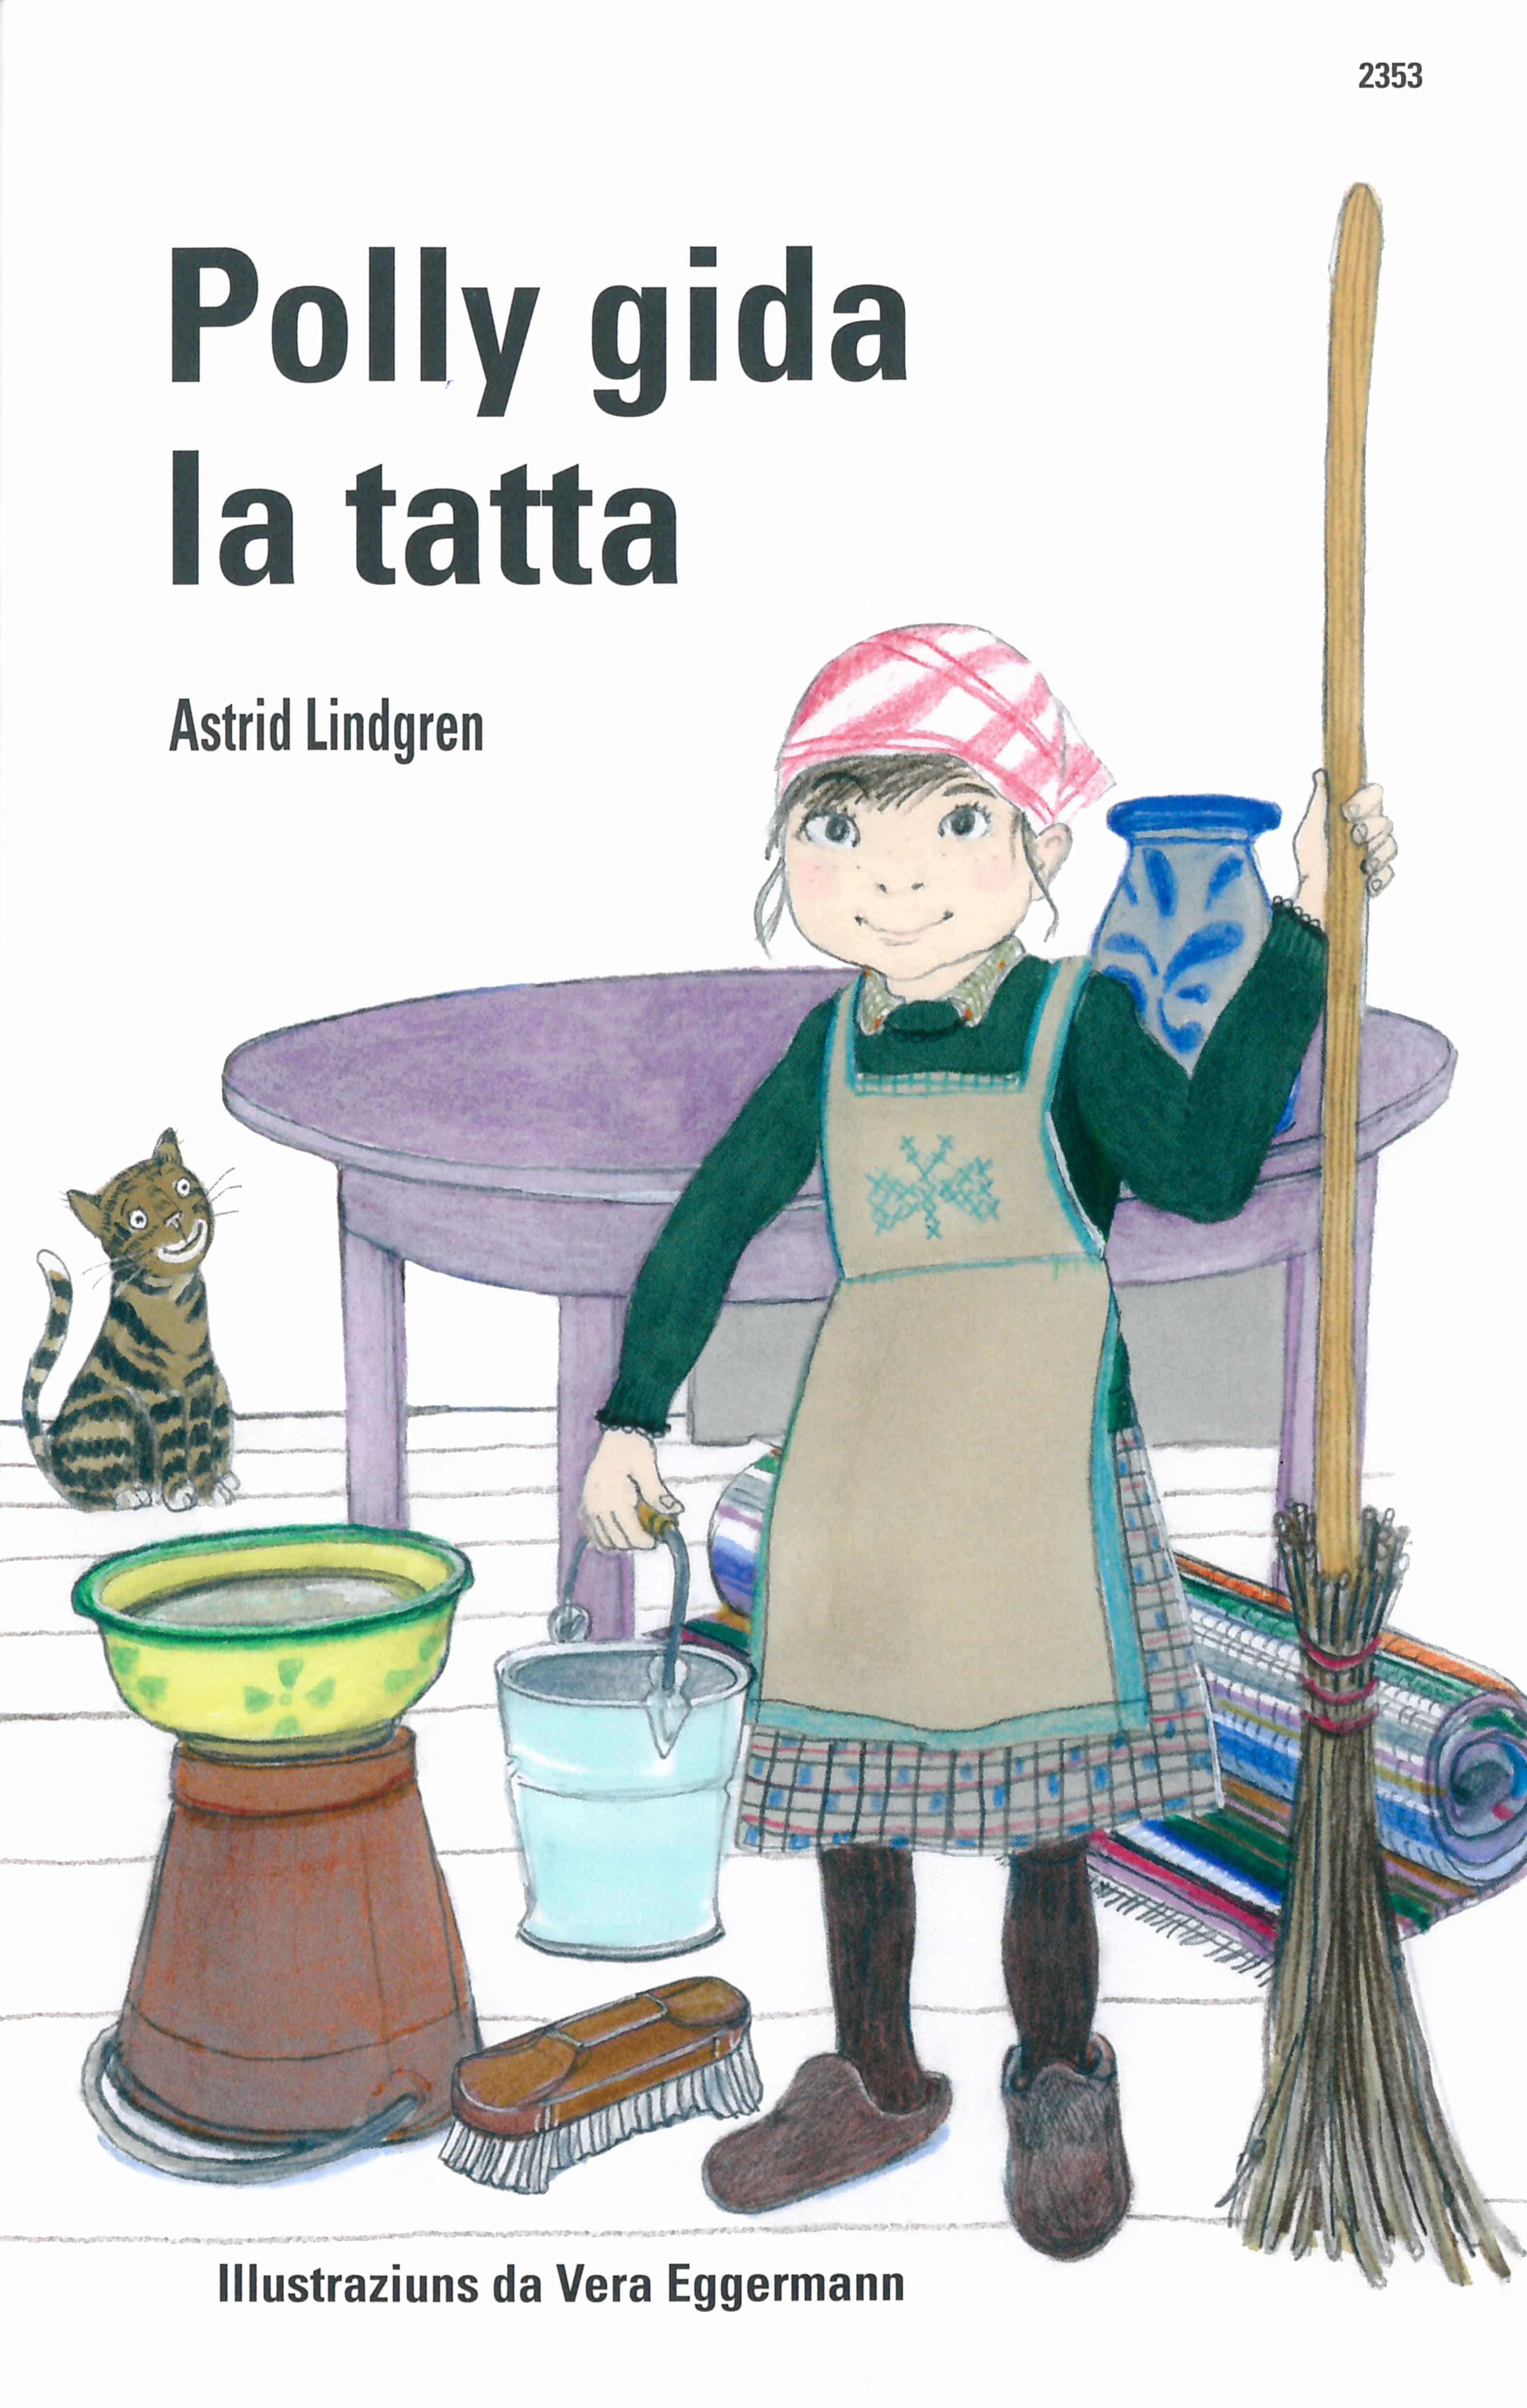 Polly gida la tatta, ein Kinderbuch von Astrid Lindgren, Illustration von Vera Eggermann, SJW Verlag, Weihnachtsgeschichte